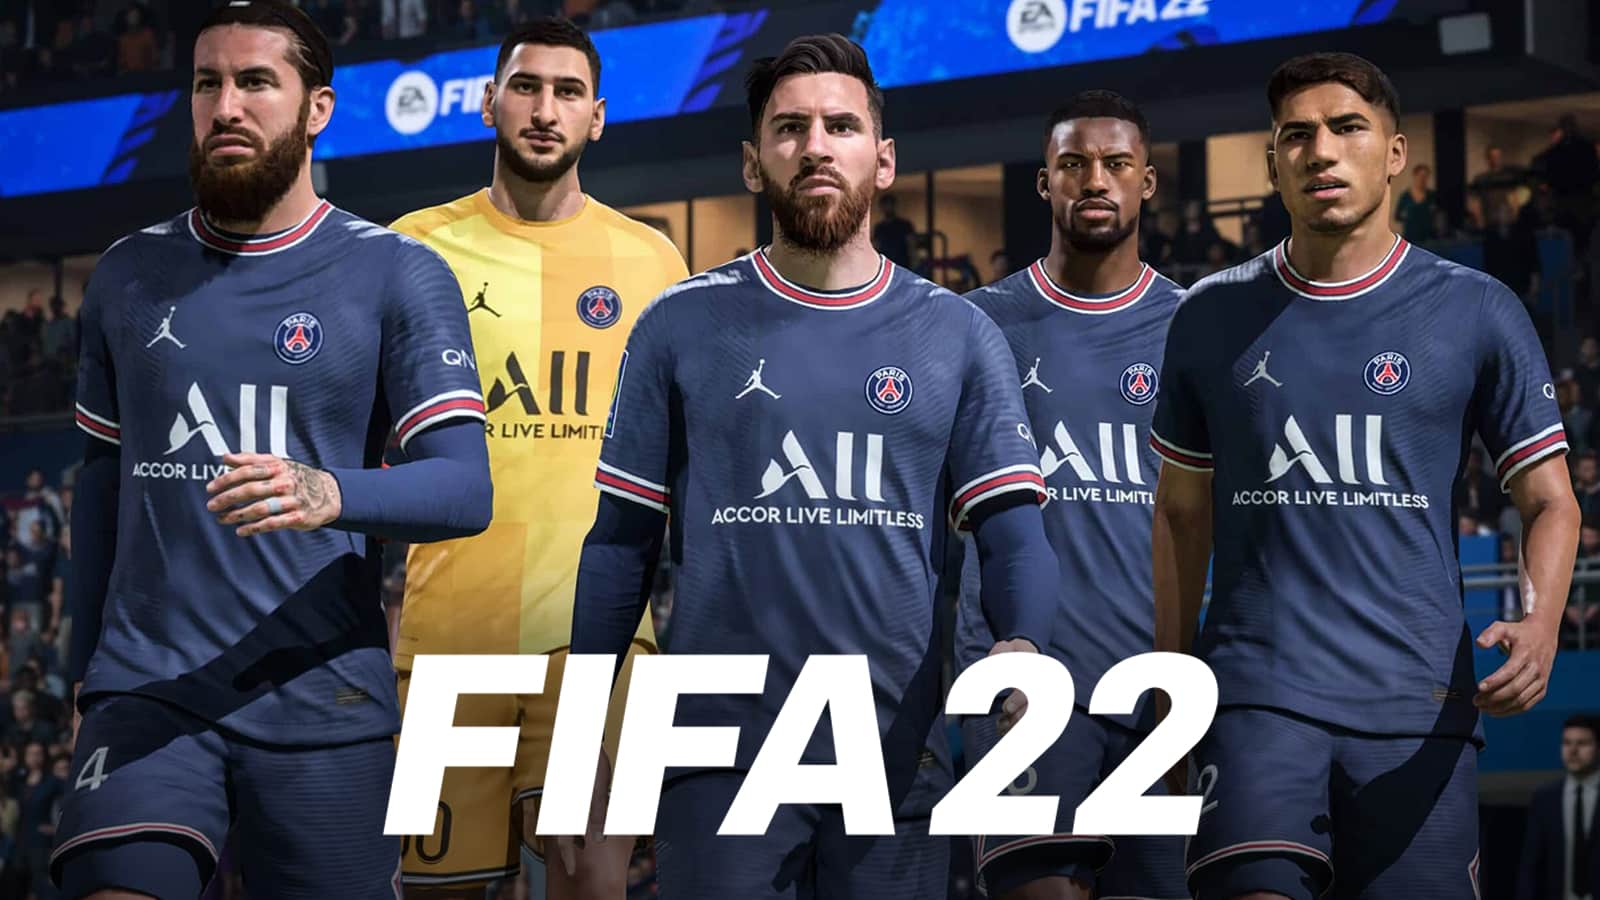 10 Best FIFA 22 Teams List | Teams Based on Ratings